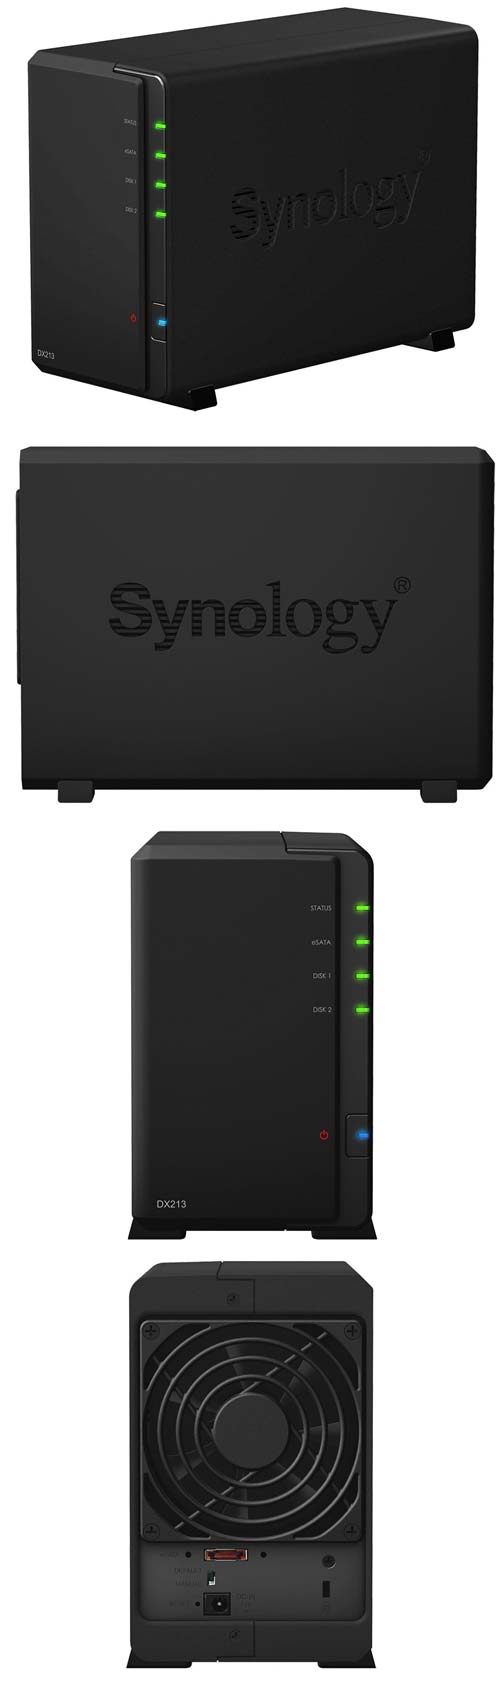 Synology DX213 поможет увеличить ёмкость NAS